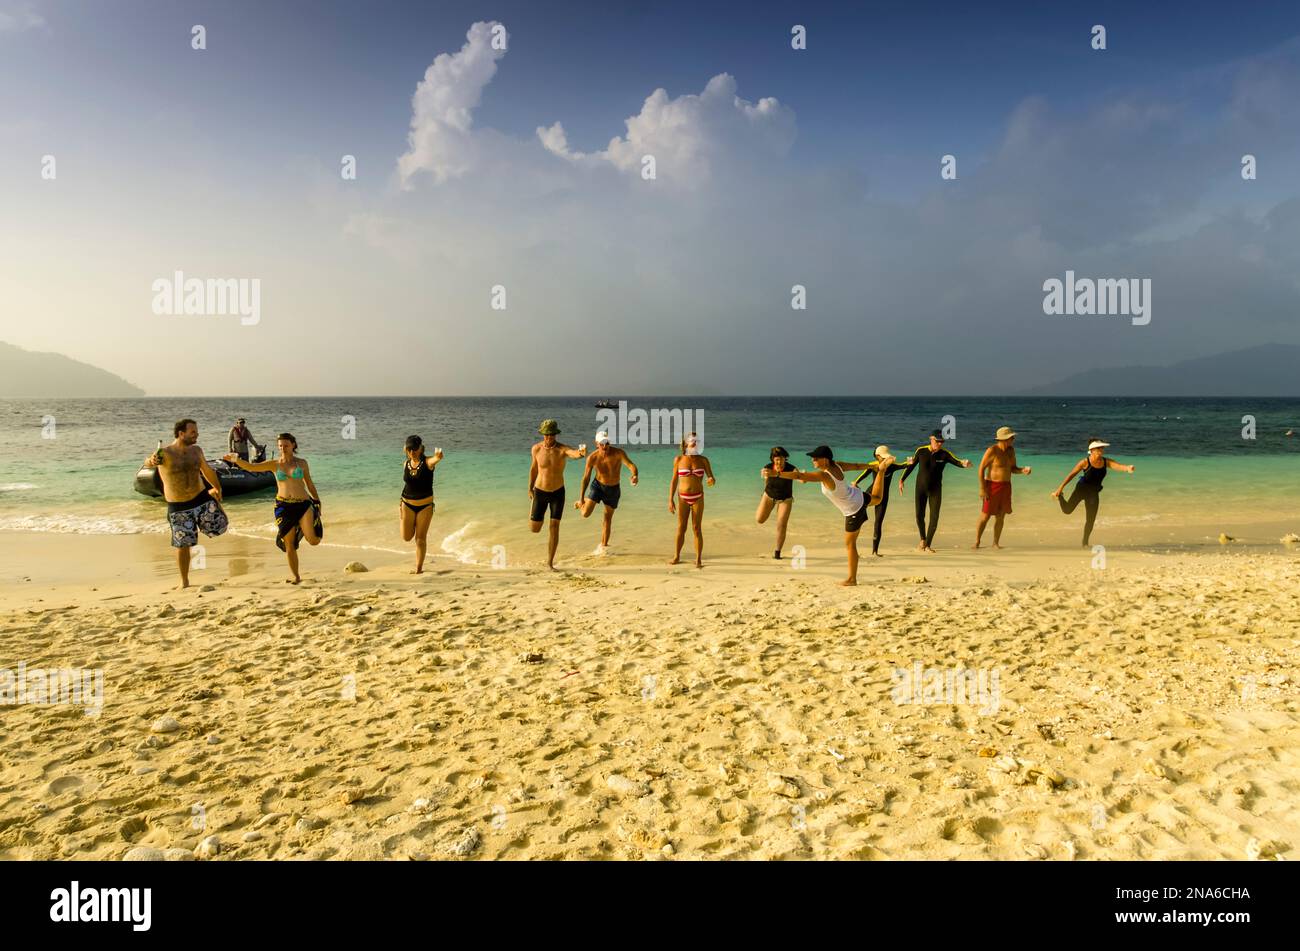 Passagers de croisière ayant une leçon d'aérobic sur une plage tropicale déserte en Papouasie-Nouvelle-Guinée ; Deka Deka Island, province de Milne Bay, Papouasie-Nouvelle-Guinée Banque D'Images